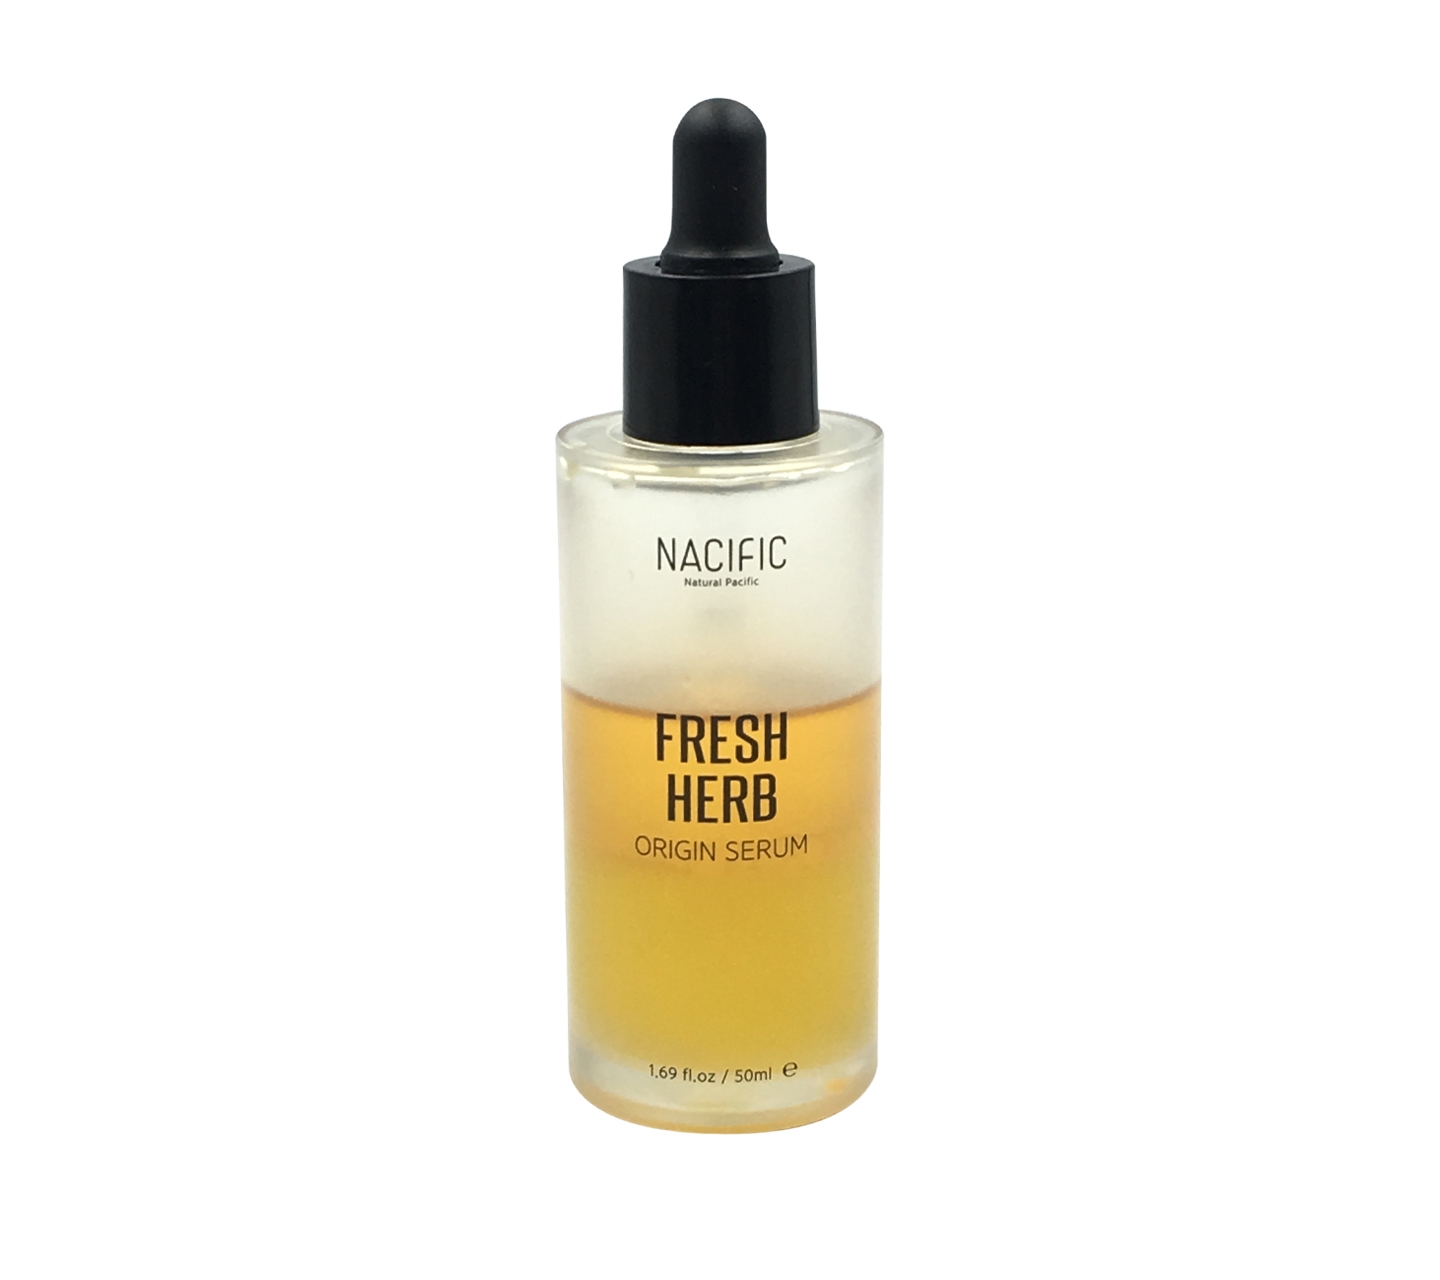 Nacific Fresh Herb Origin Serum Skin Care